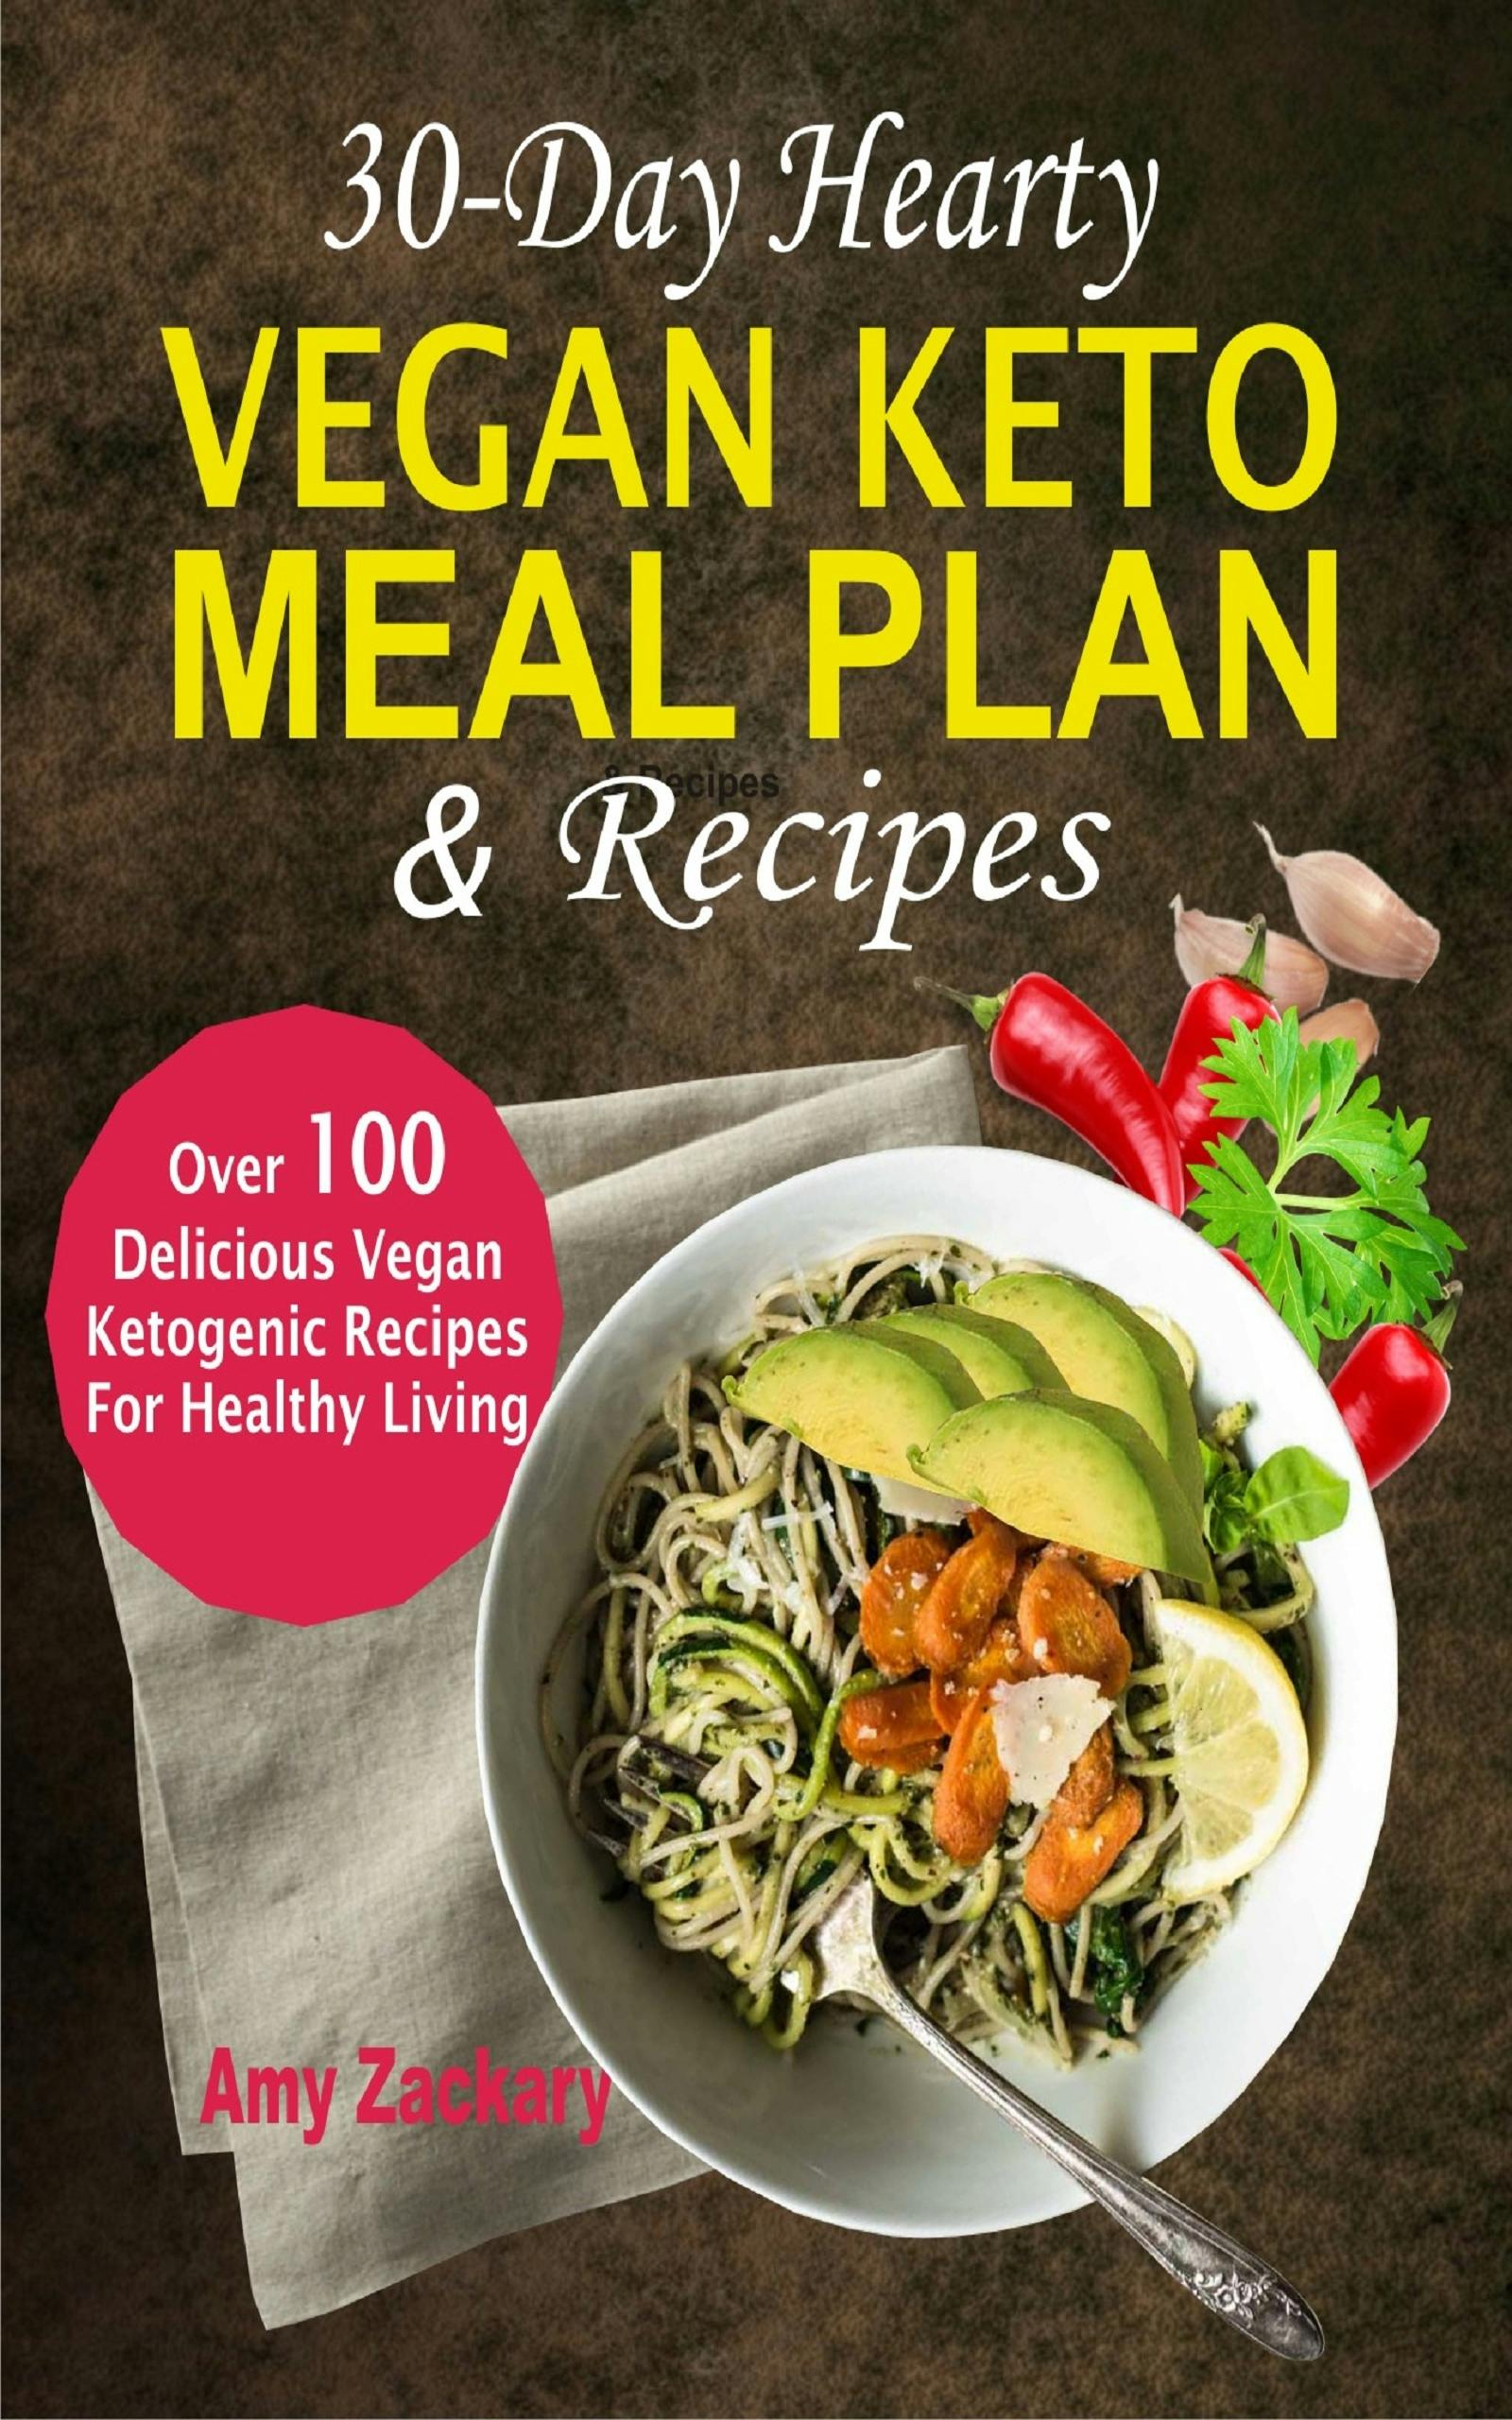 30-Day Hearty Vegan Keto Meal Plan & Recipes - Amy Zachary